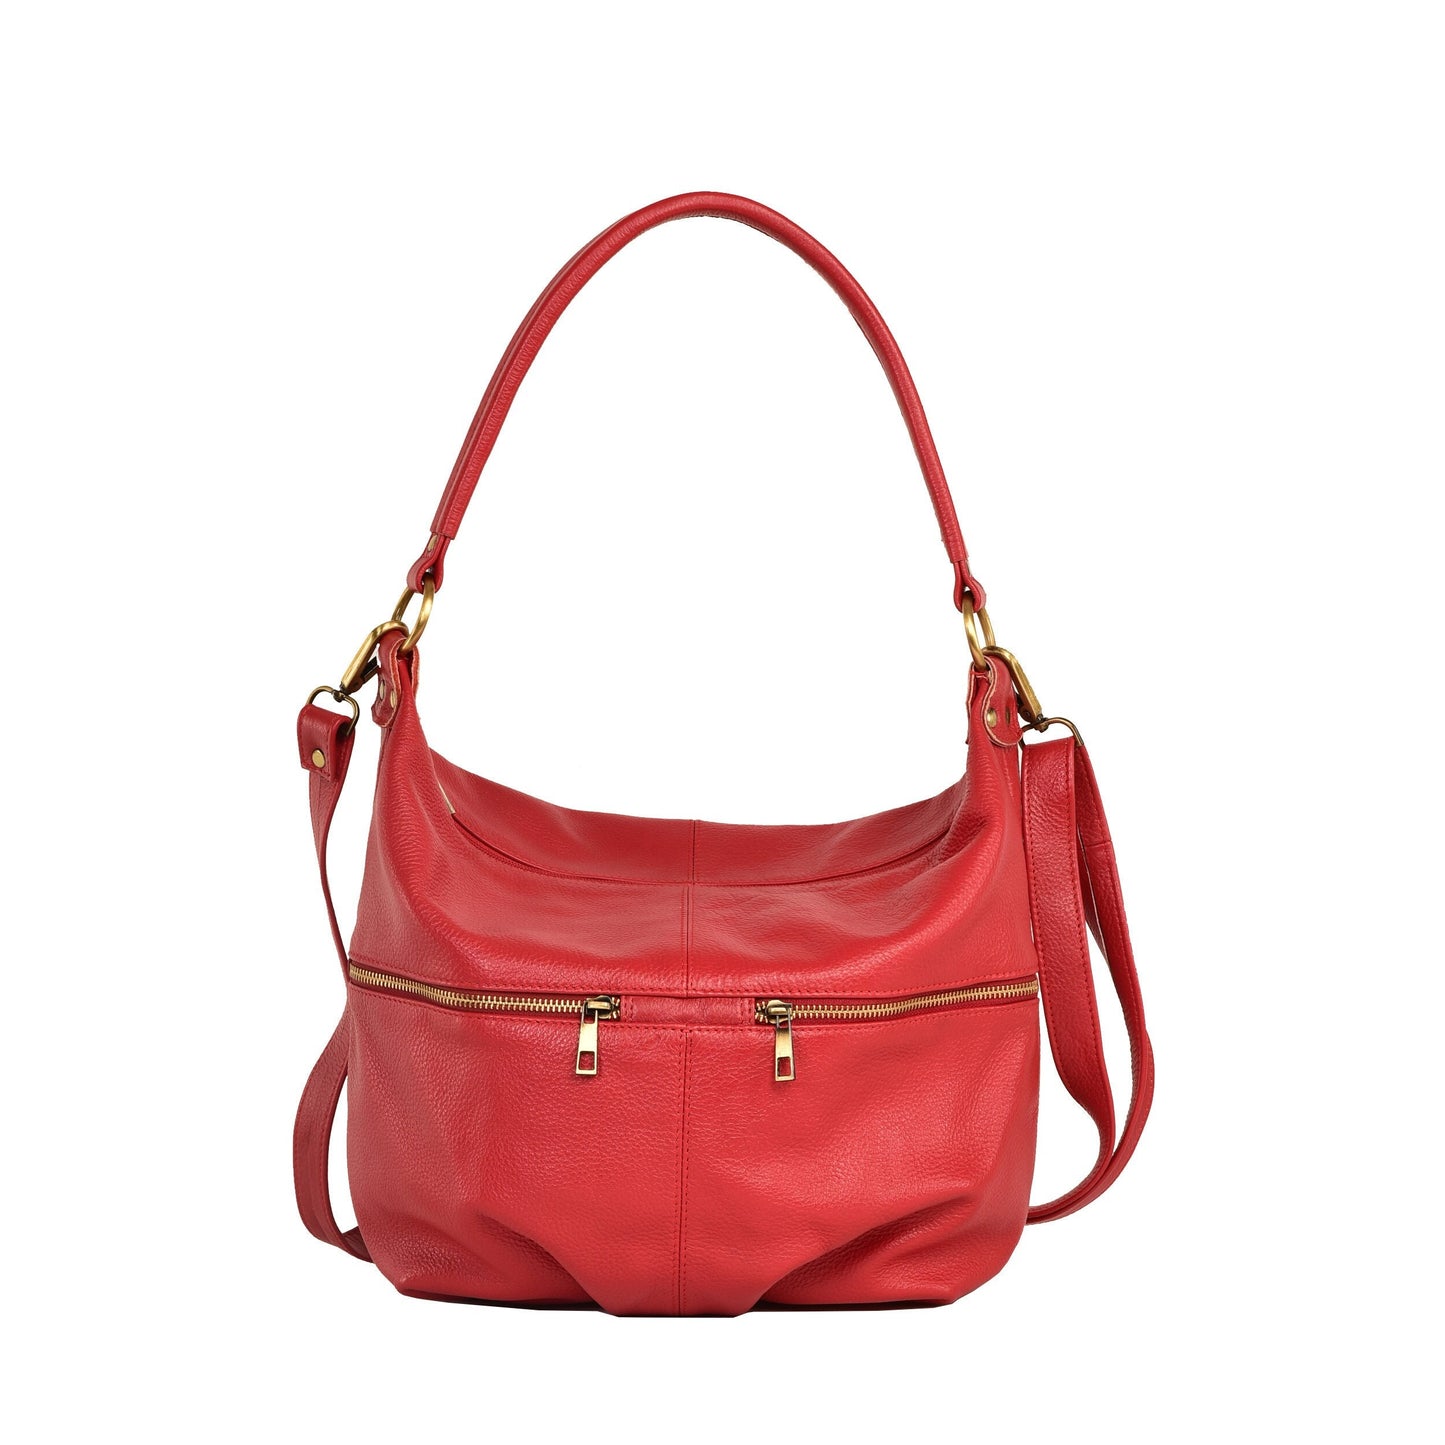 Red Leather Shoulder Hobo Bag - Everyday Crossbody Leather Purse - Red Leather Handbag - Women's Leather Bag - Leather Shoulder Bag